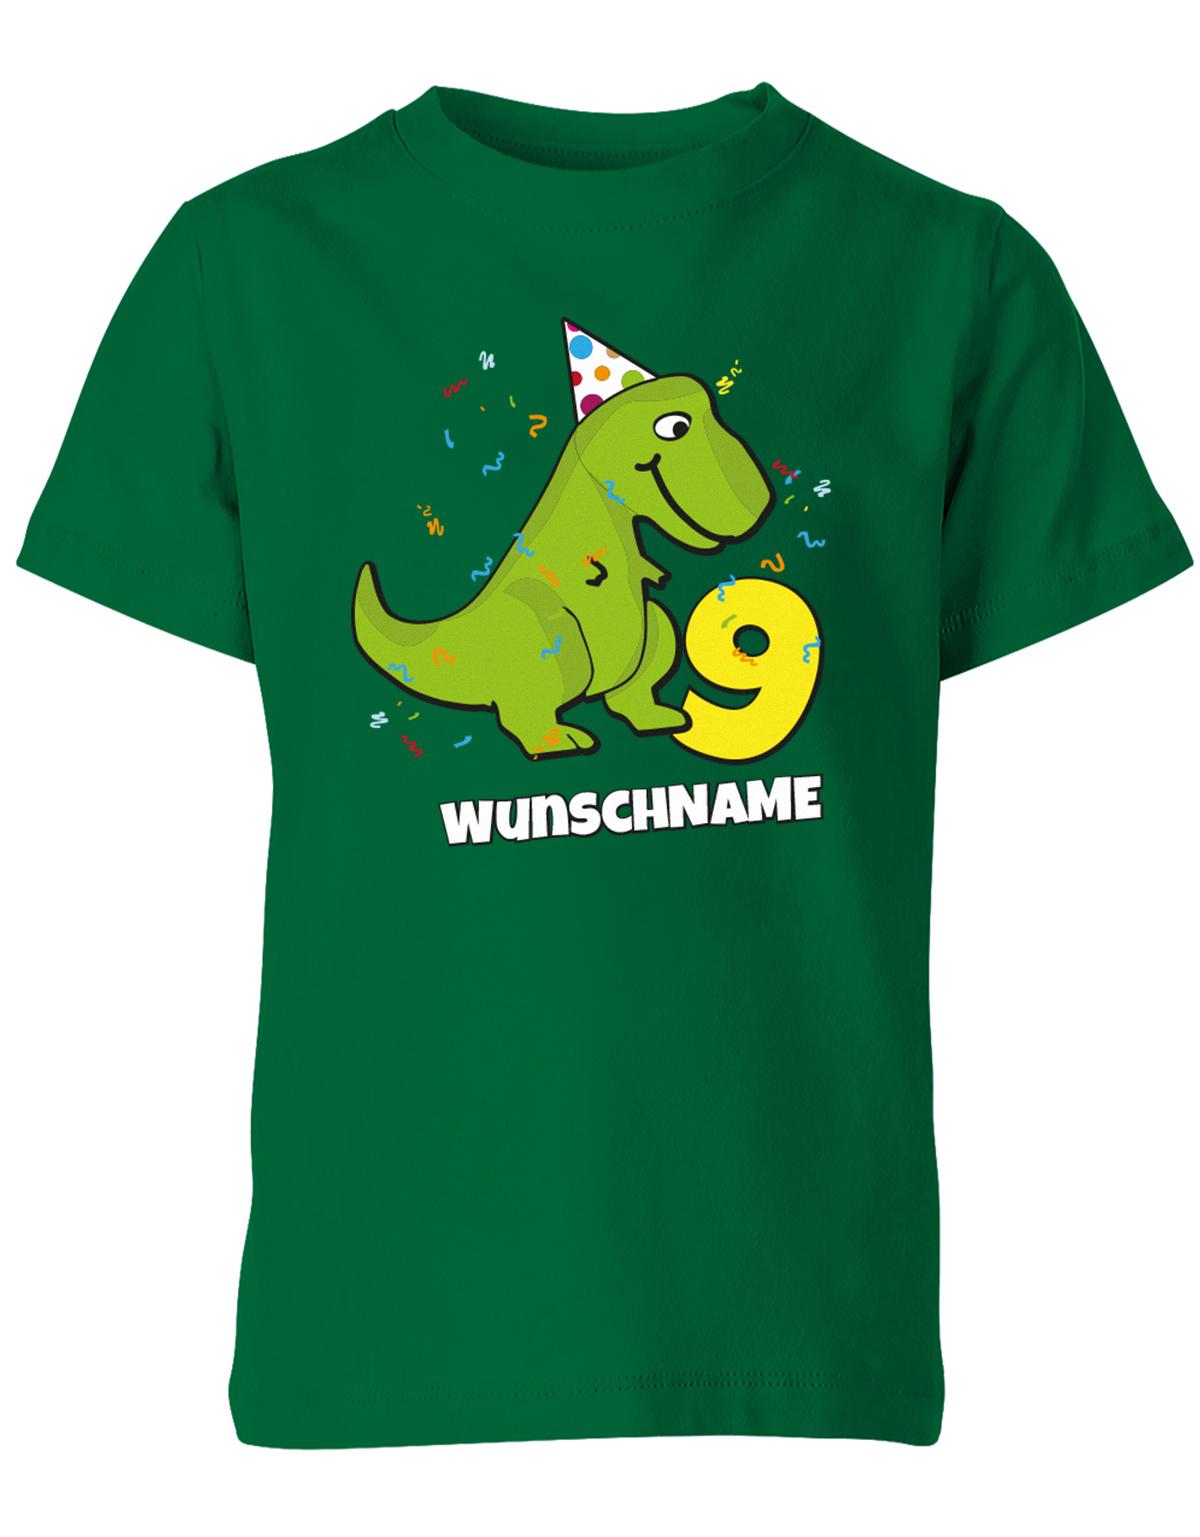 ich-bin-9-Dinosaurier-t-rex-wunschname-geburtstag-kinder-shirt-gruen